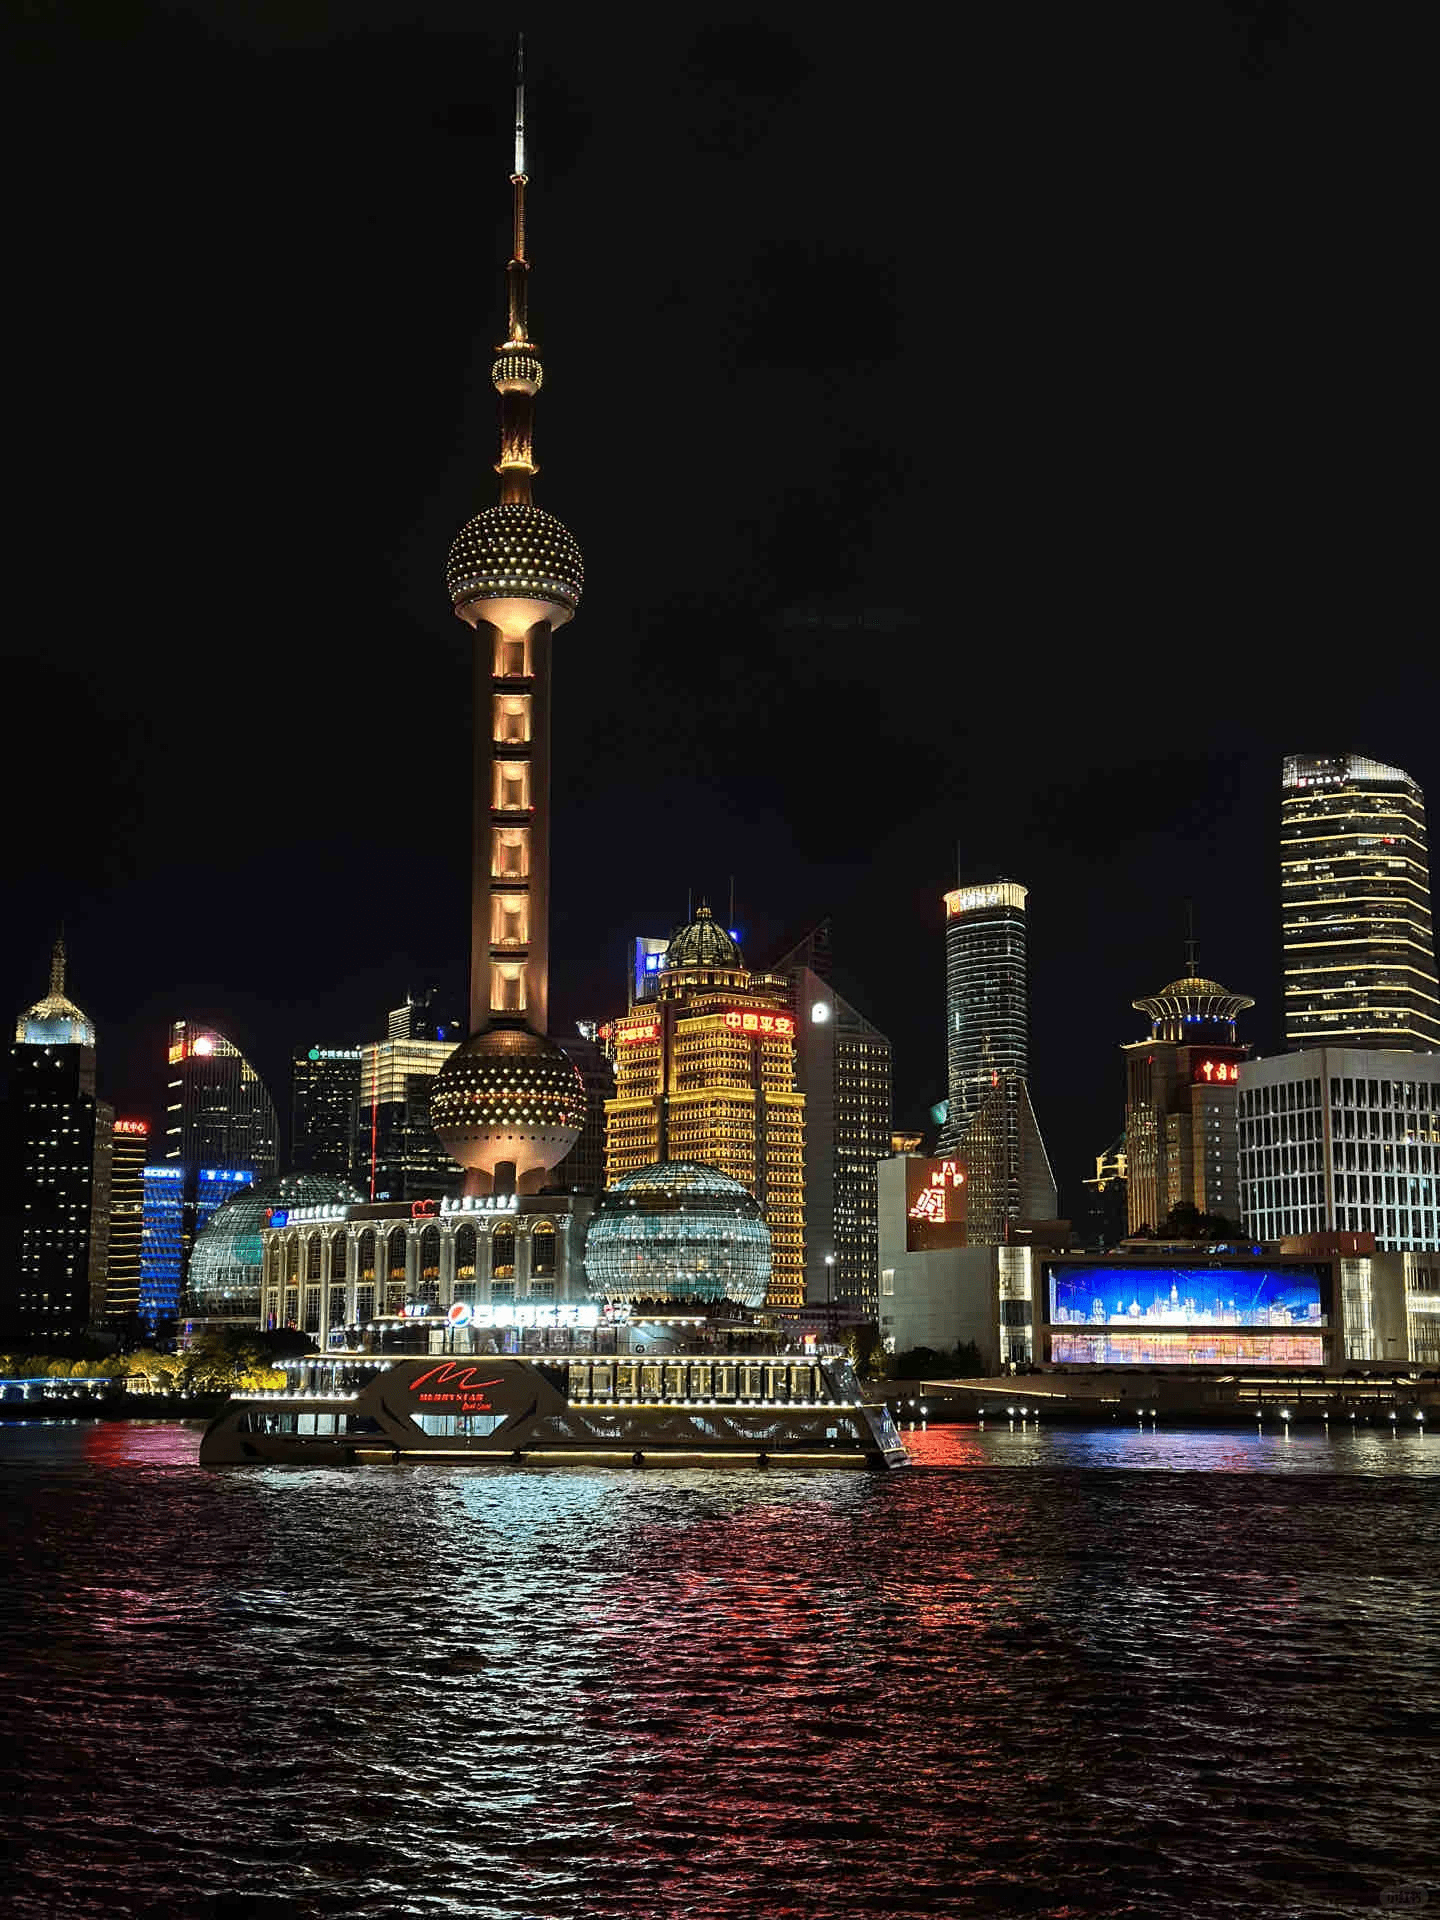 【携程攻略】上海黄浦江游览（十六铺码头）景点,打票时要了夜游19：45分的船班，上到船后又加每人50元坐船顶有坐位的…